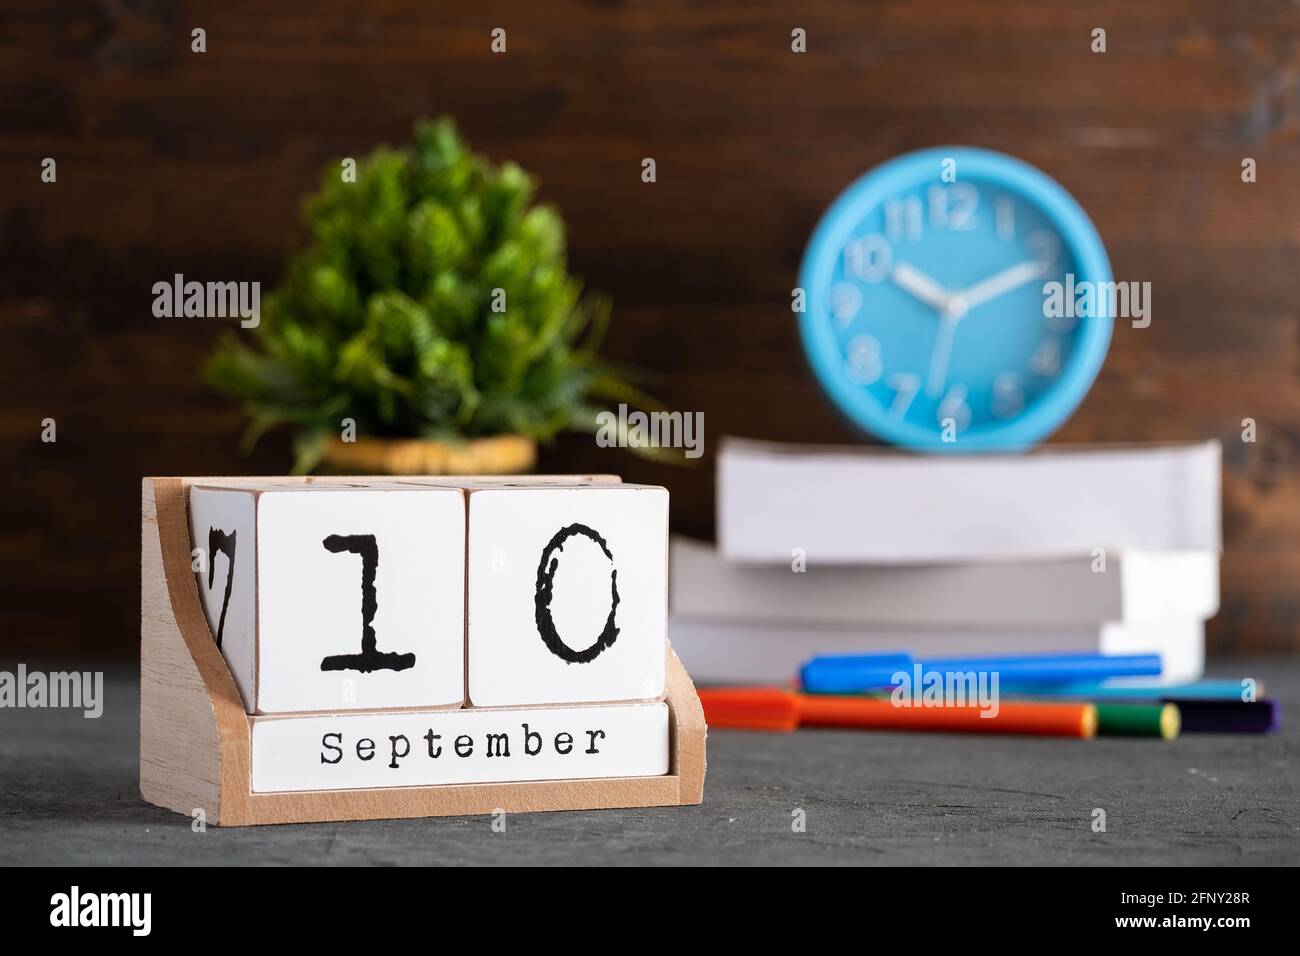 Septiembre 10th. Septiembre 10 calendario cubo de madera con objetos borrosos en el fondo. Foto de stock